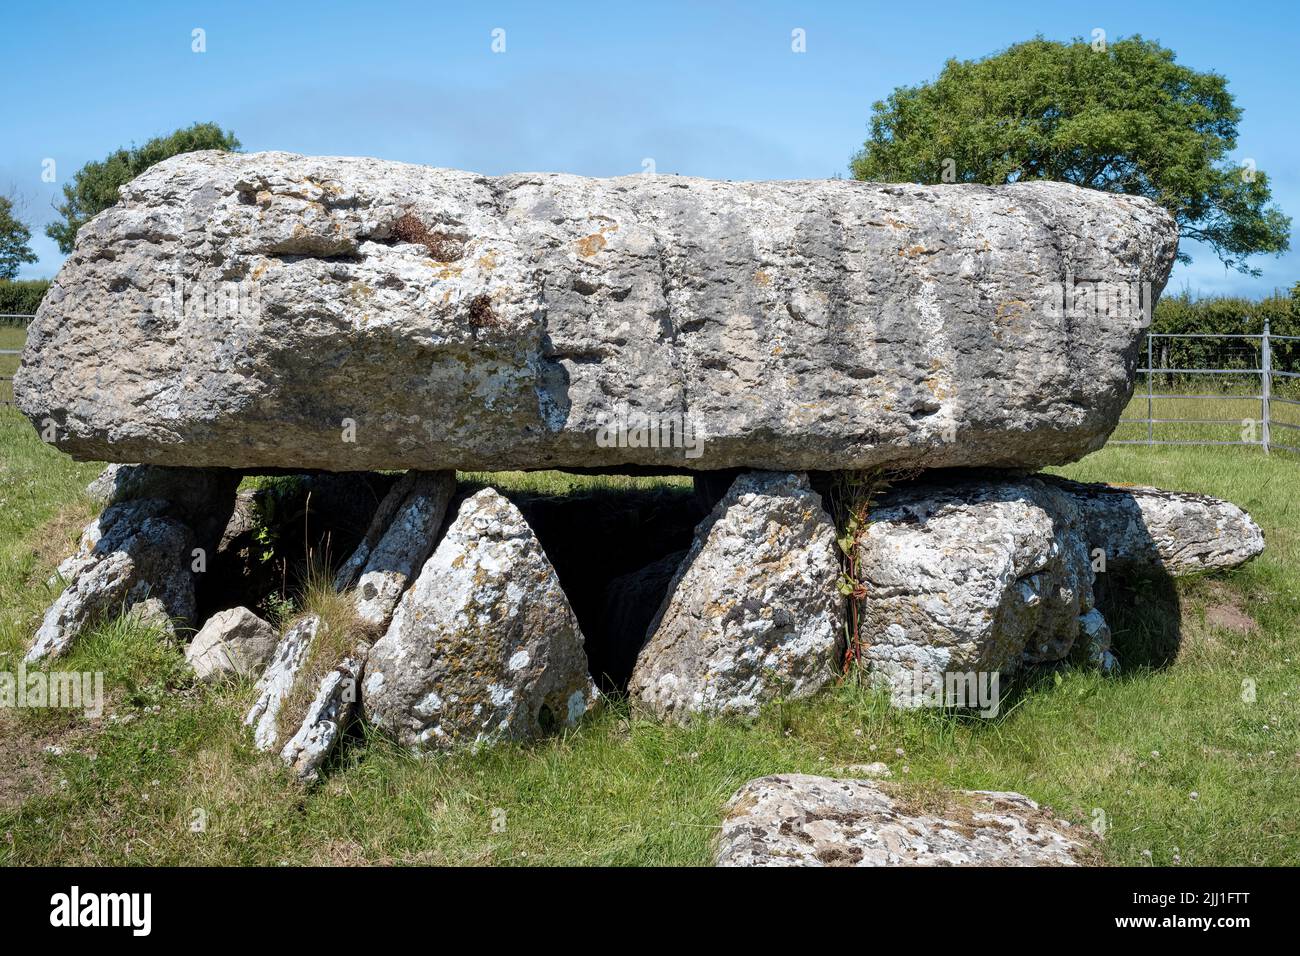 La notable piedra angular de 25 toneladas y los pilares de apoyo de la cámara funeraria neolítica en Lligwy, Moelfre, Anglesey, Gales, Reino Unido Foto de stock